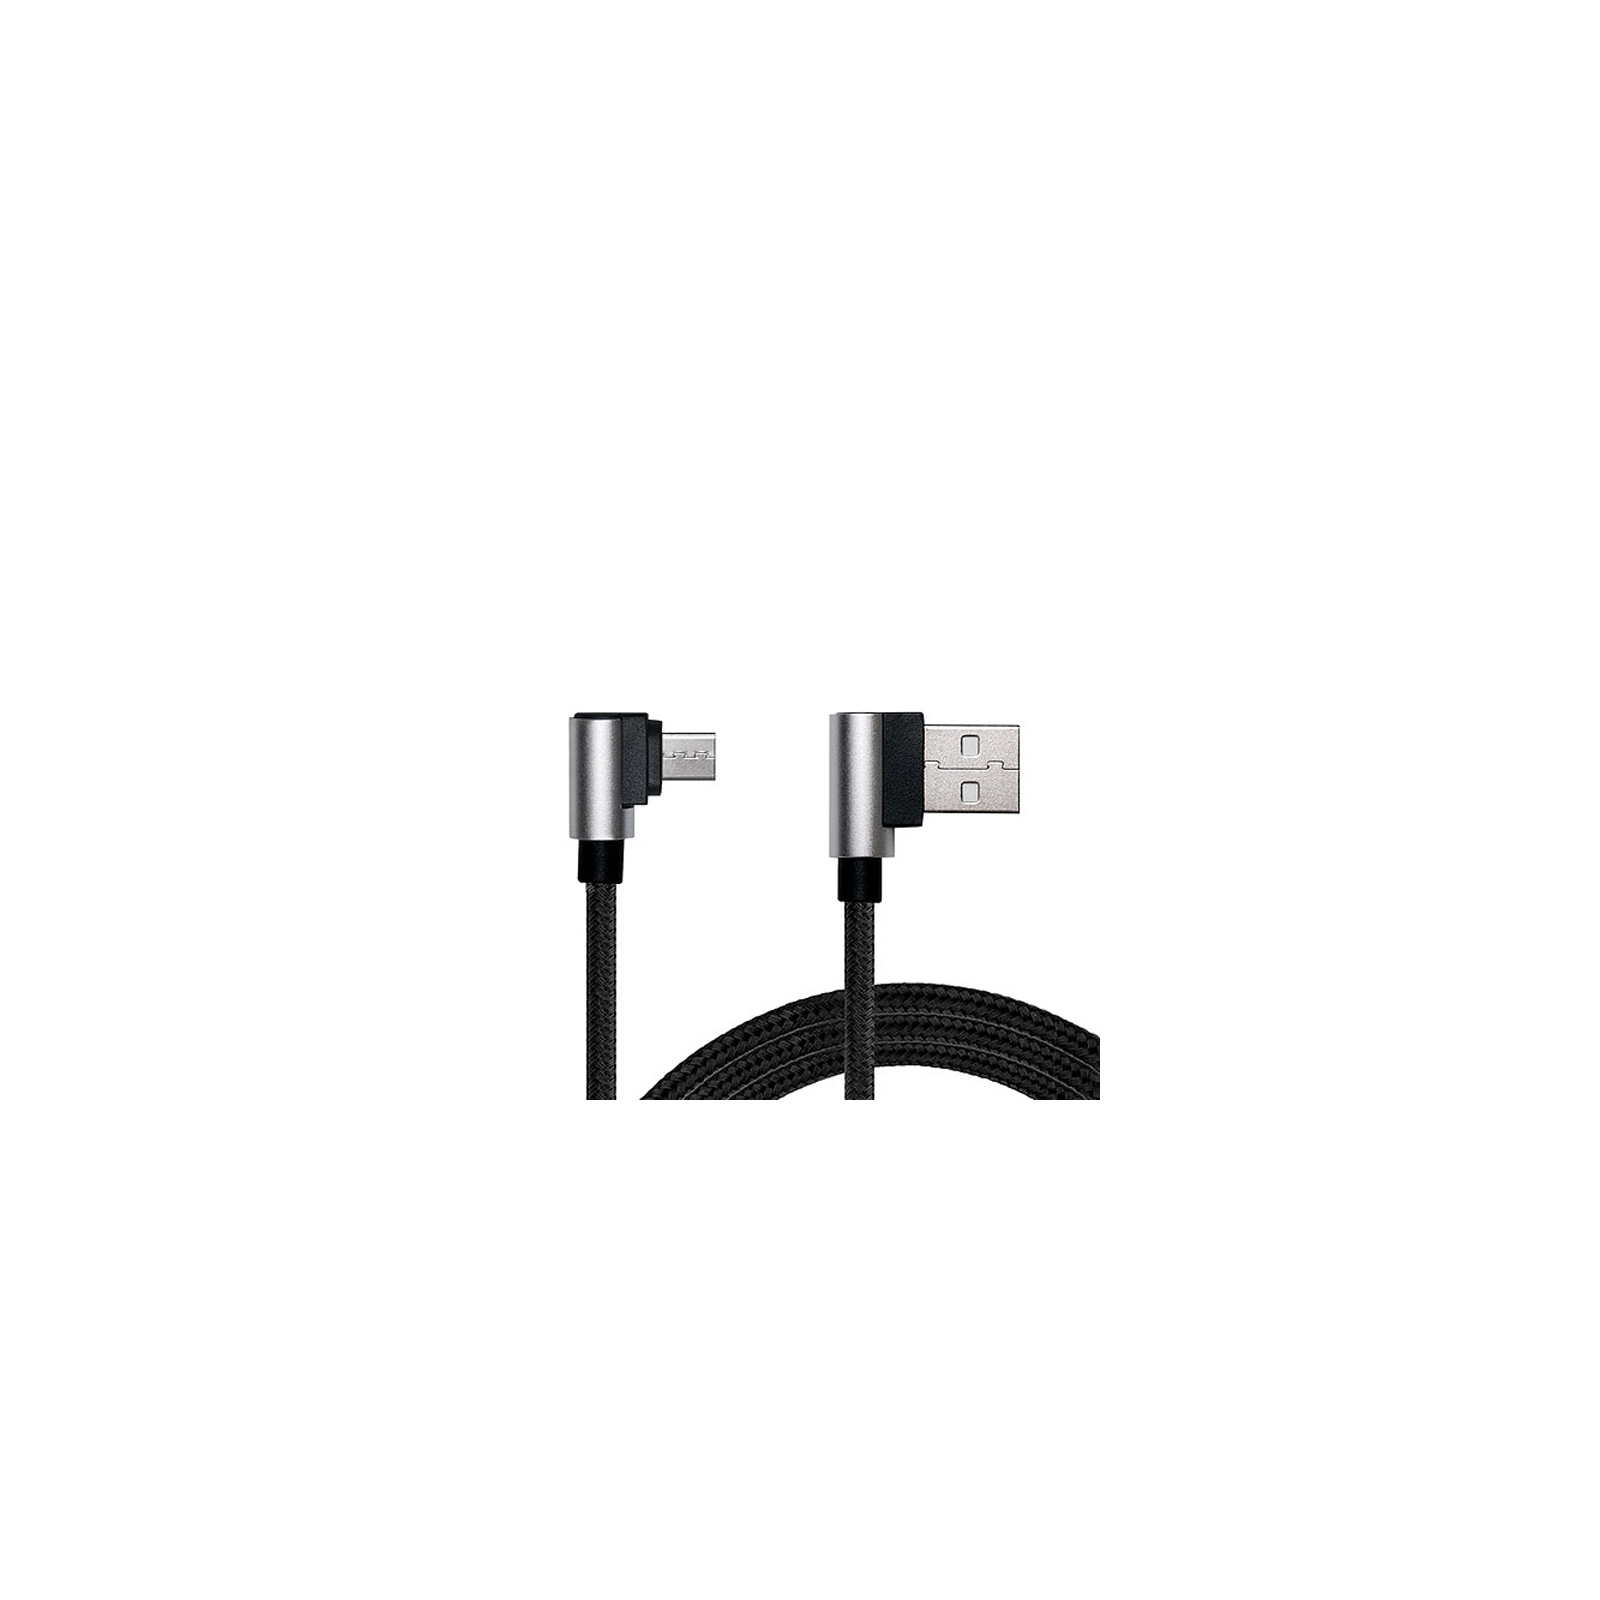 Дата кабель USB 2.0 AM to Micro 5P 1.0m Premium black REAL-EL (EL123500031) изображение 4